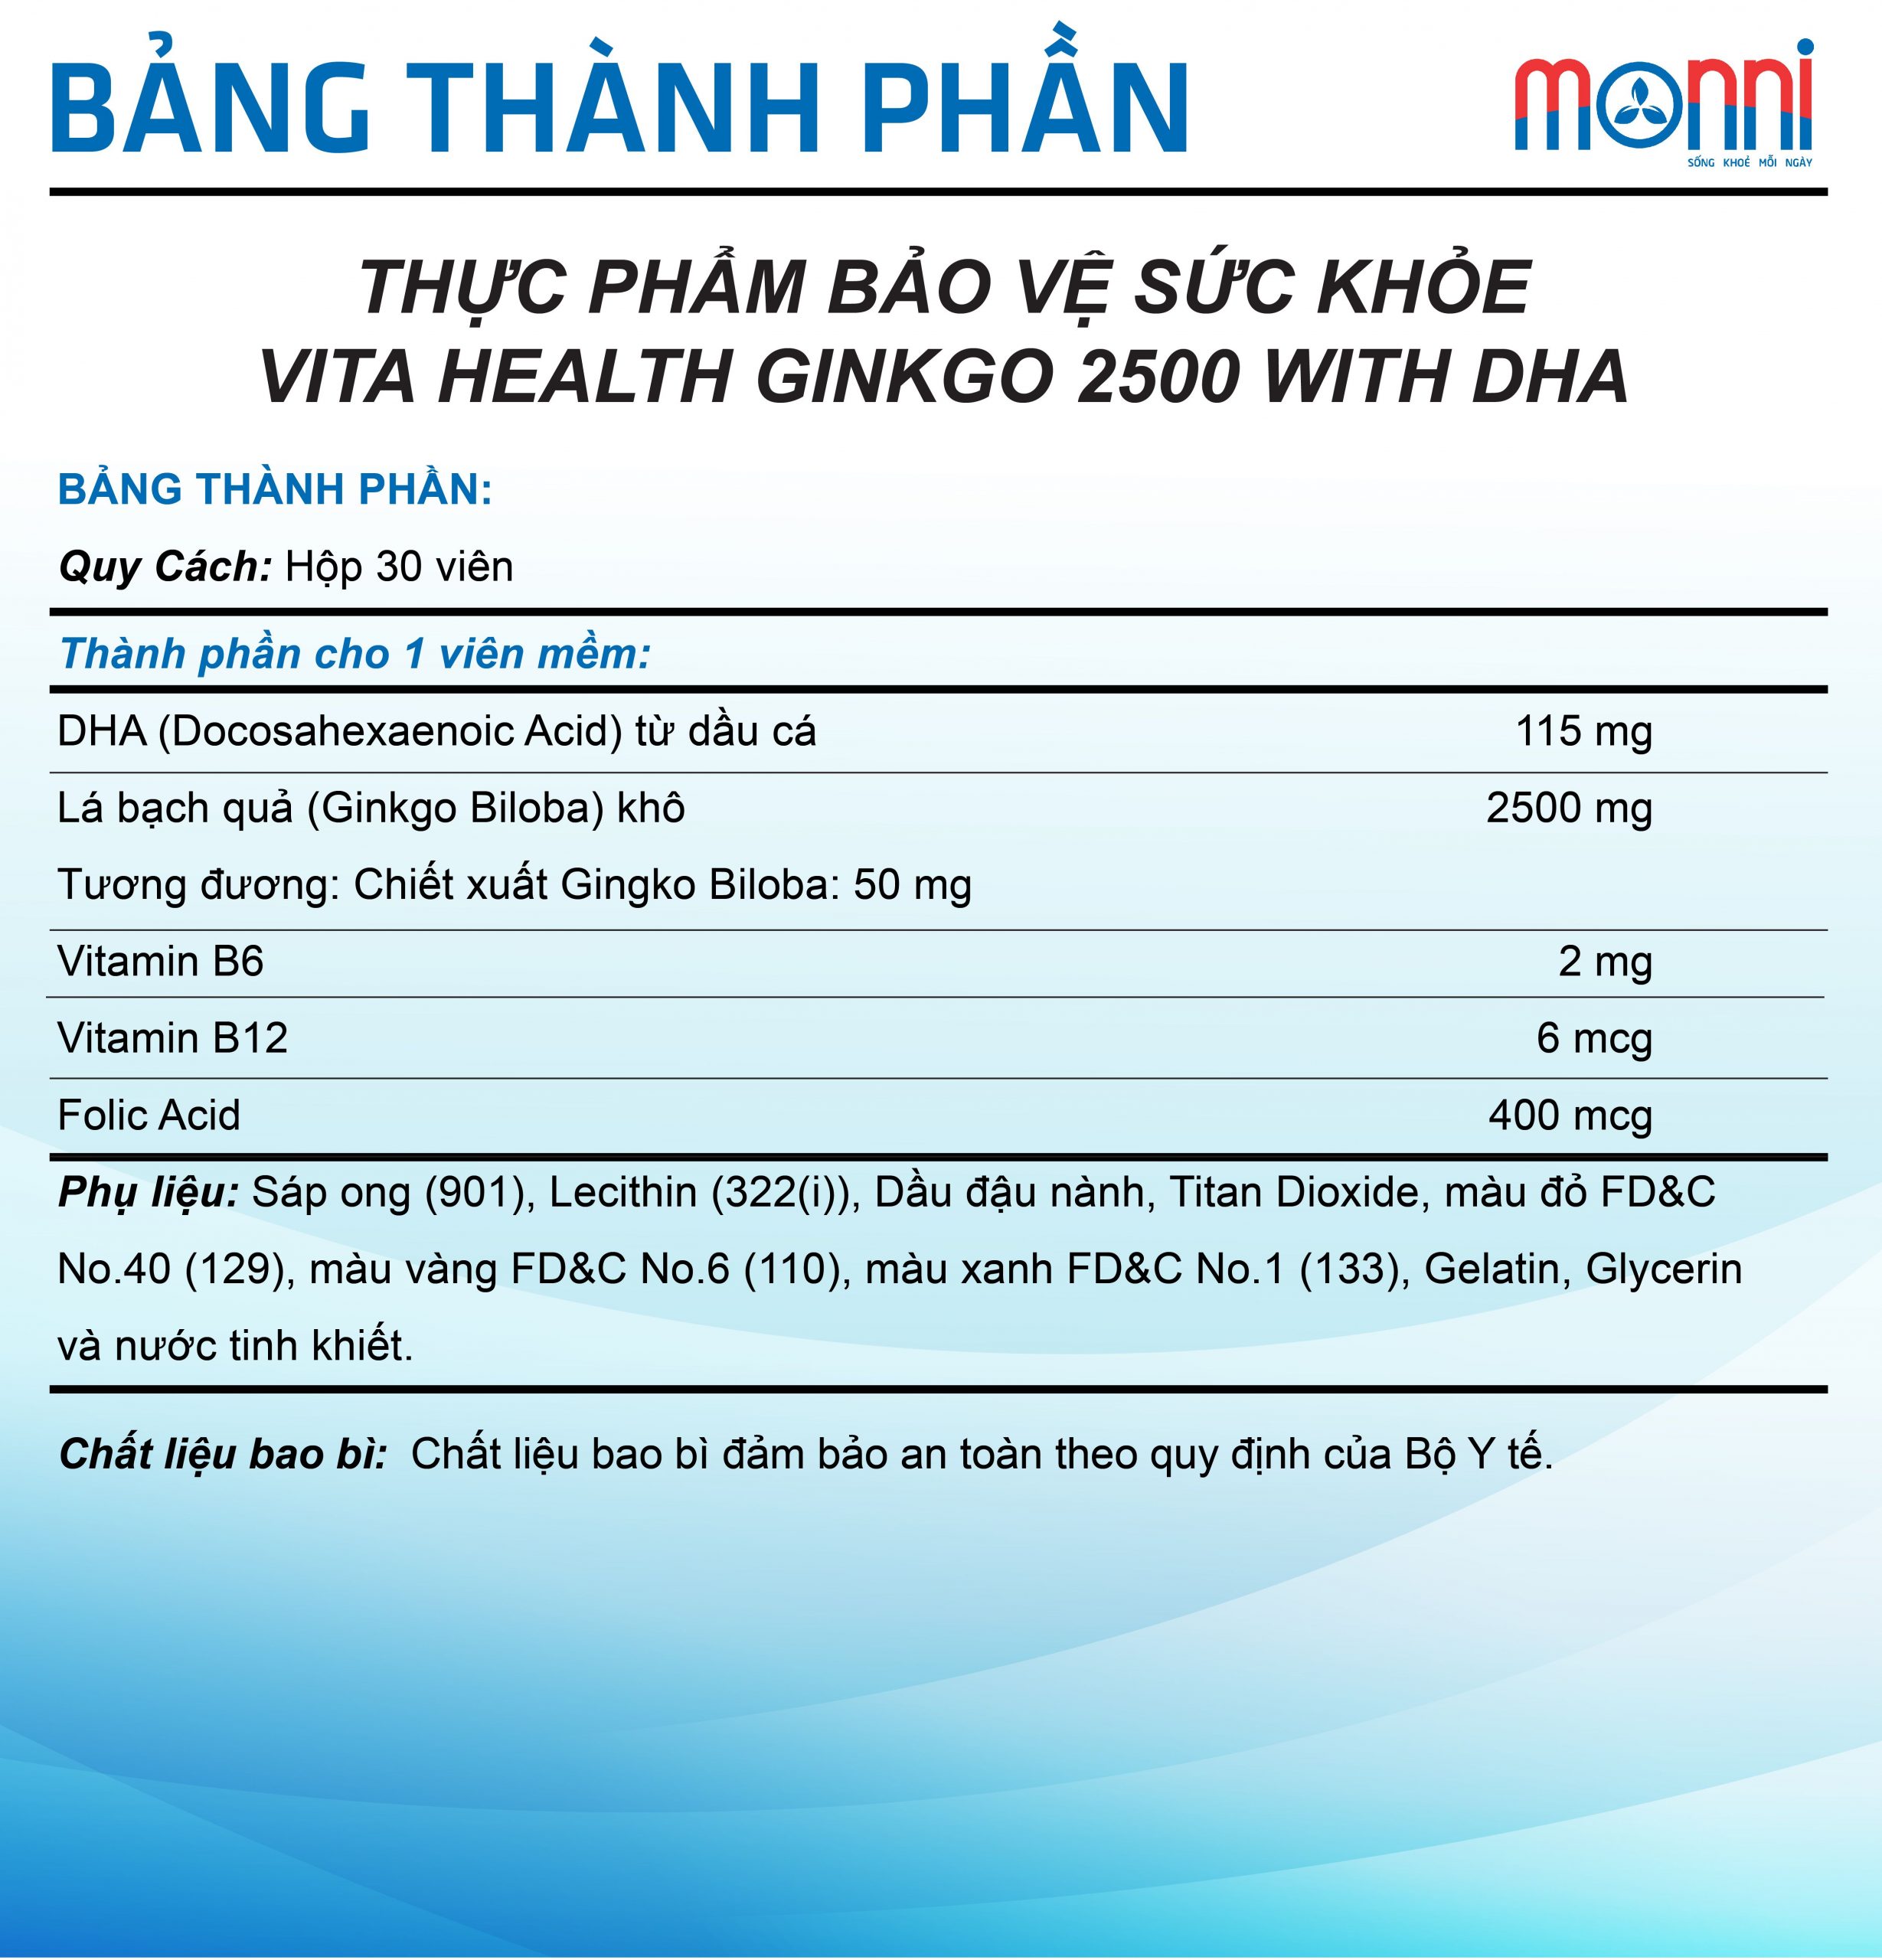 Vh Ginkgo 2500 With Dha Hop 30 Vien Btp